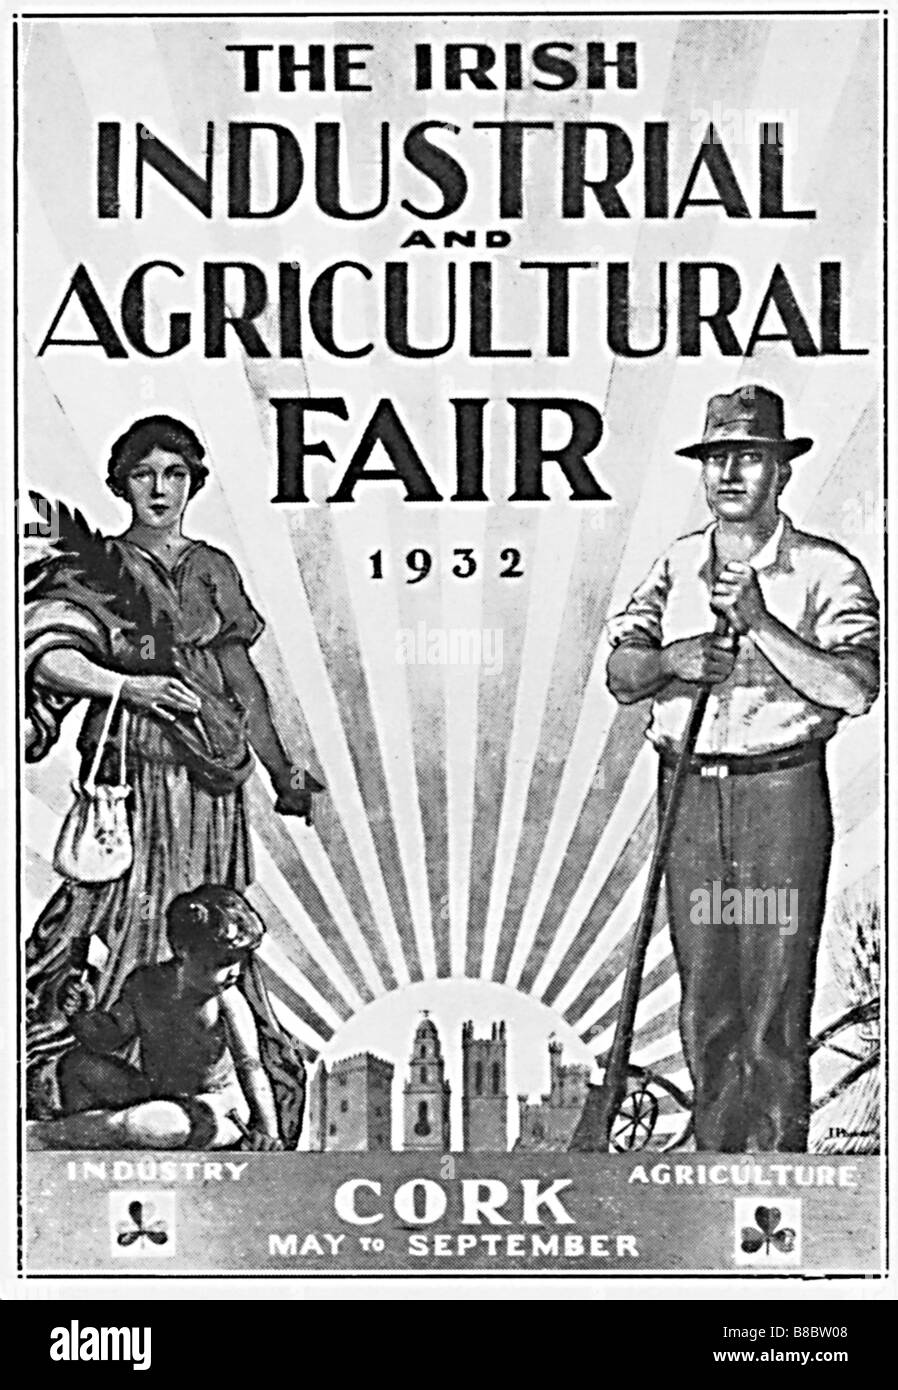 Salon irlandais 1932 publicité pour les secteurs industriel et agricole montrent à Cork Banque D'Images